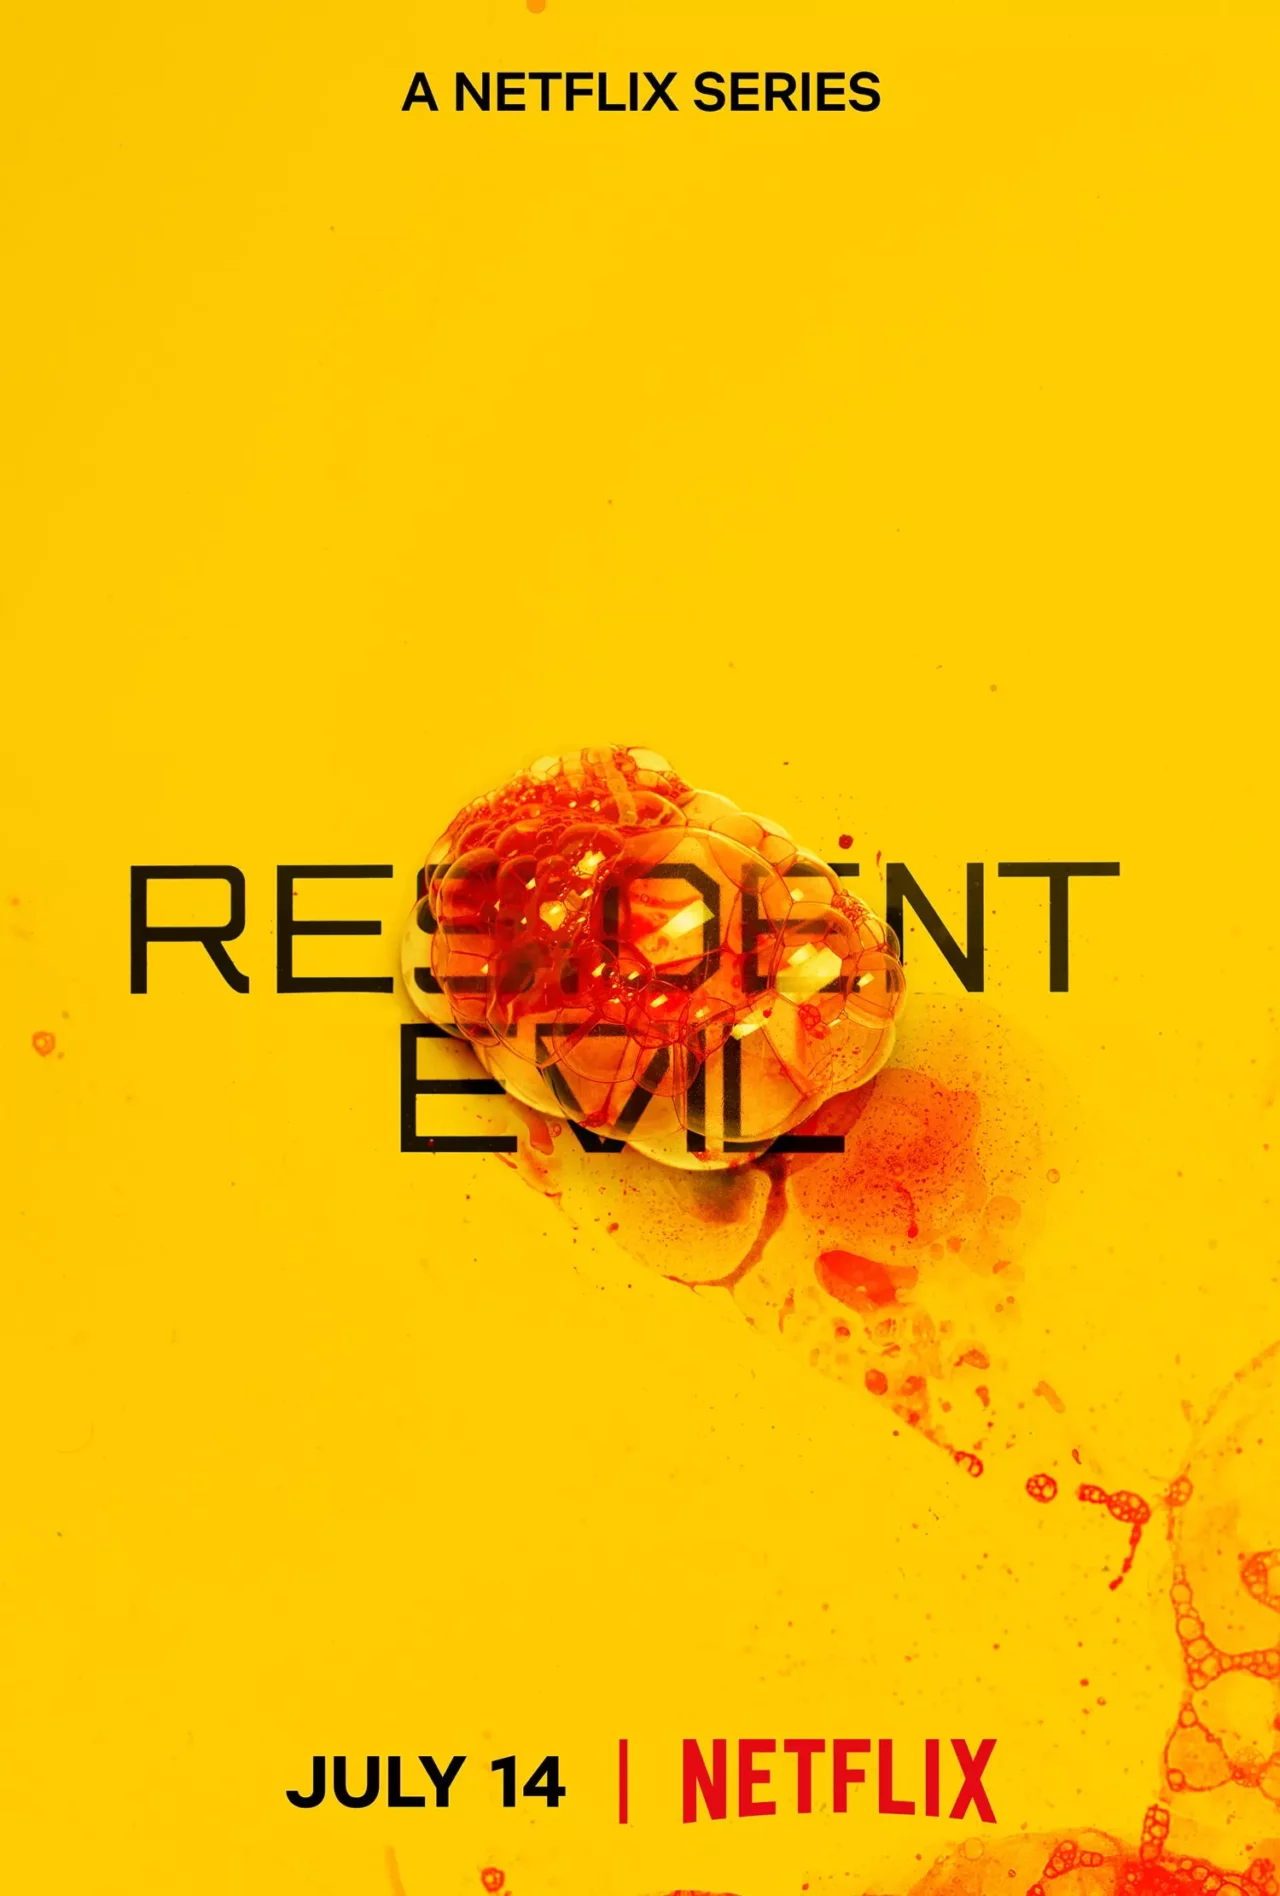 Série de Resident Evil na Netflix ganha trailer completo; veja